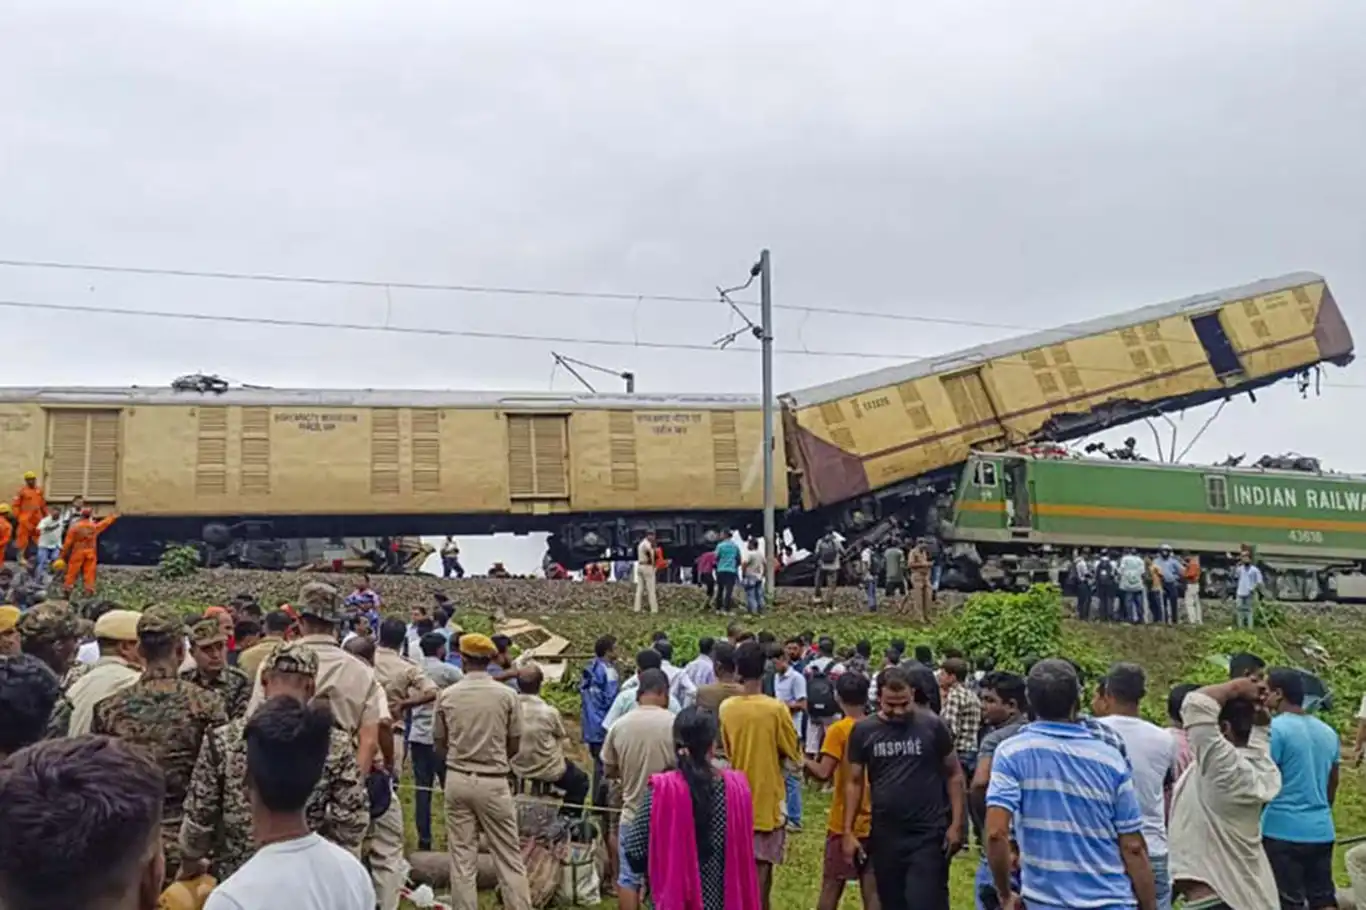 Hindistan'da tren kazası: 8 ölü, 60 yaralı